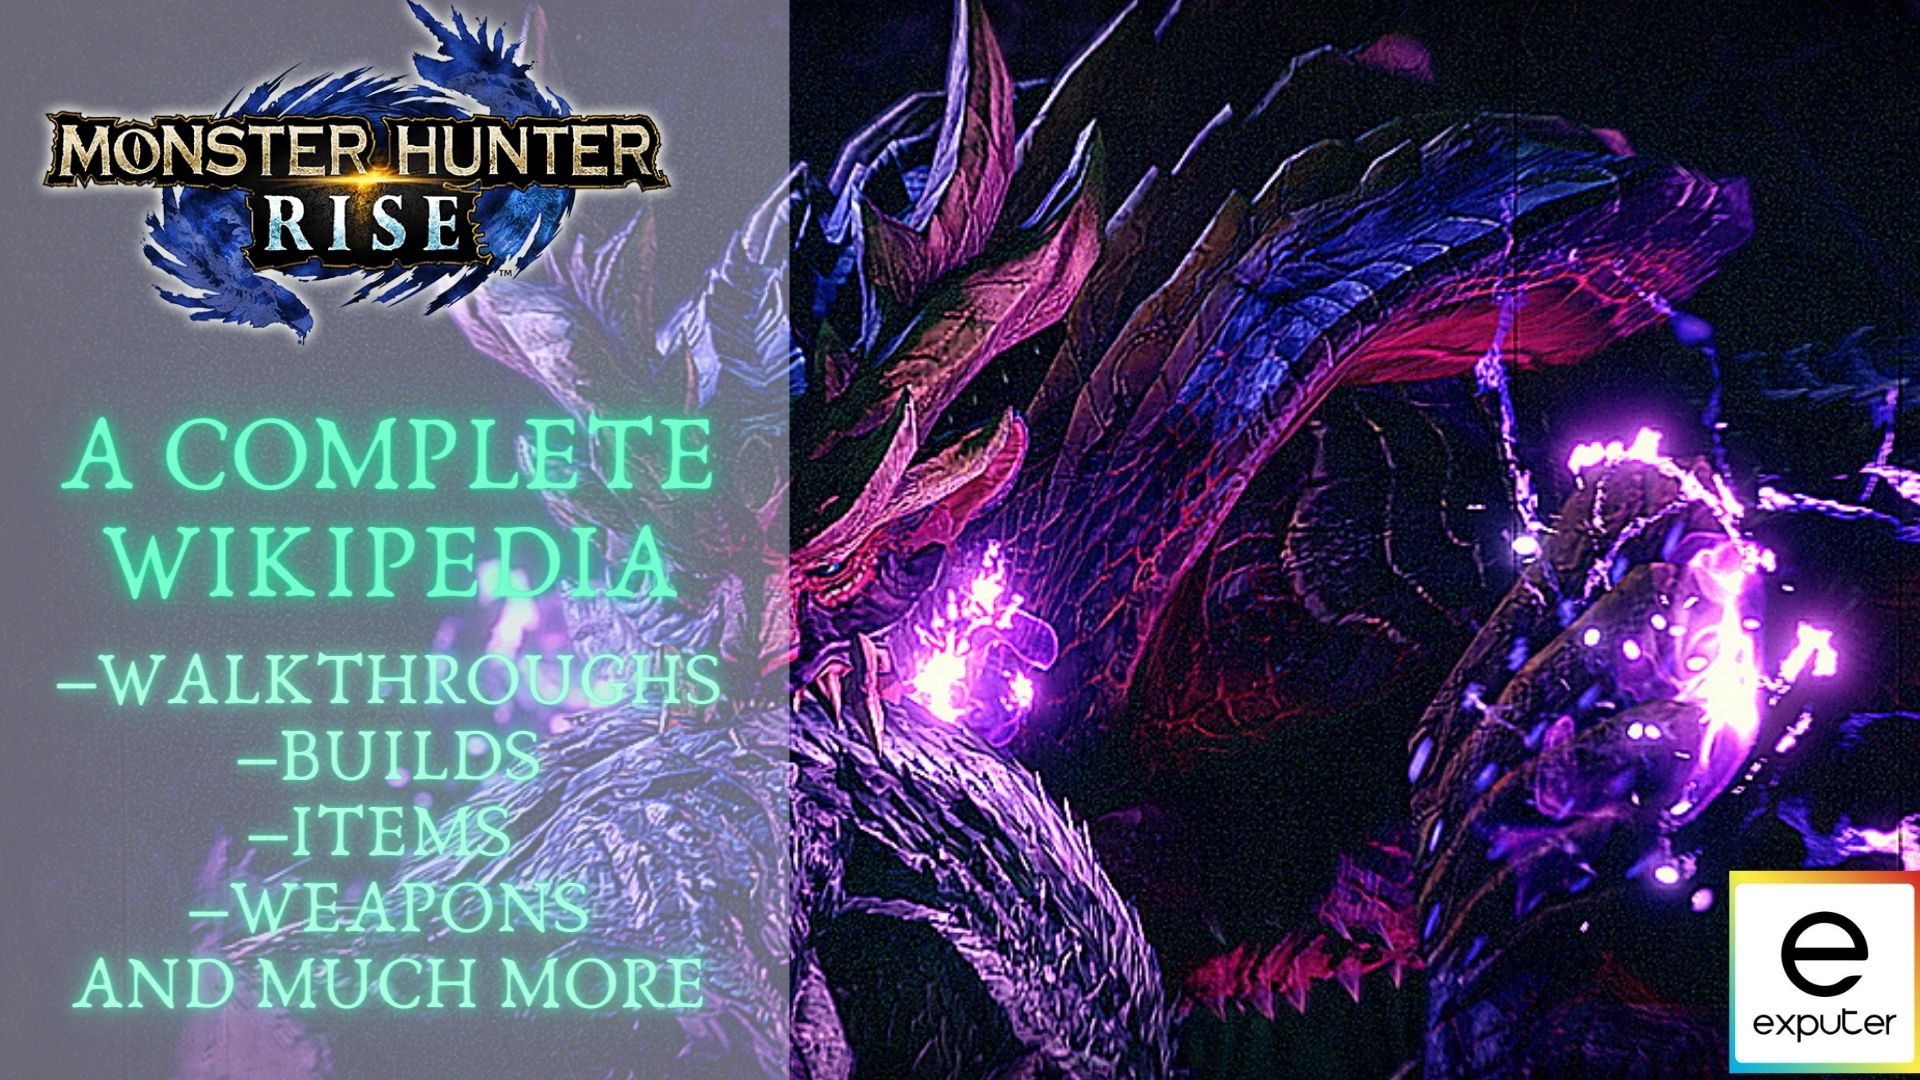 Monster Hunter - Wikipedia